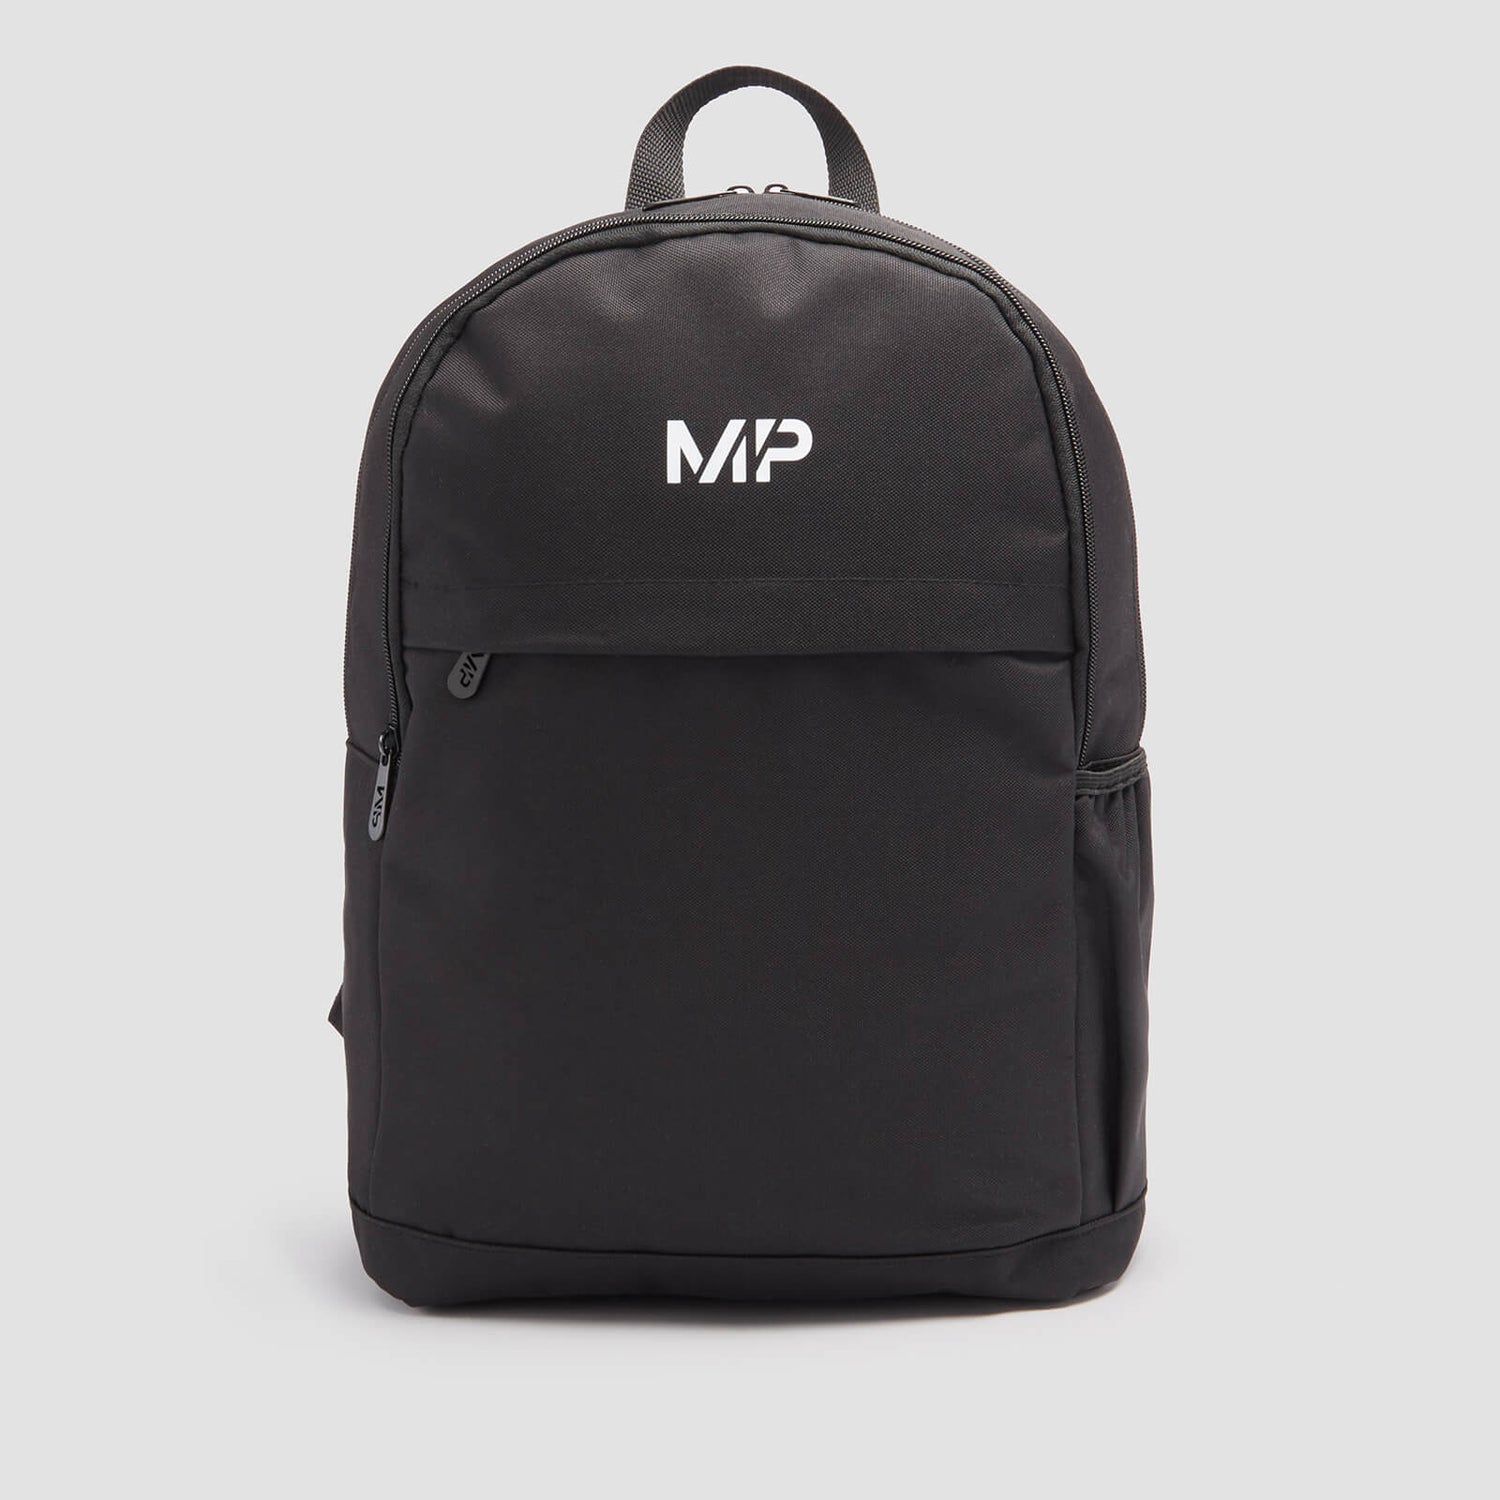 MP Backpack – Sort